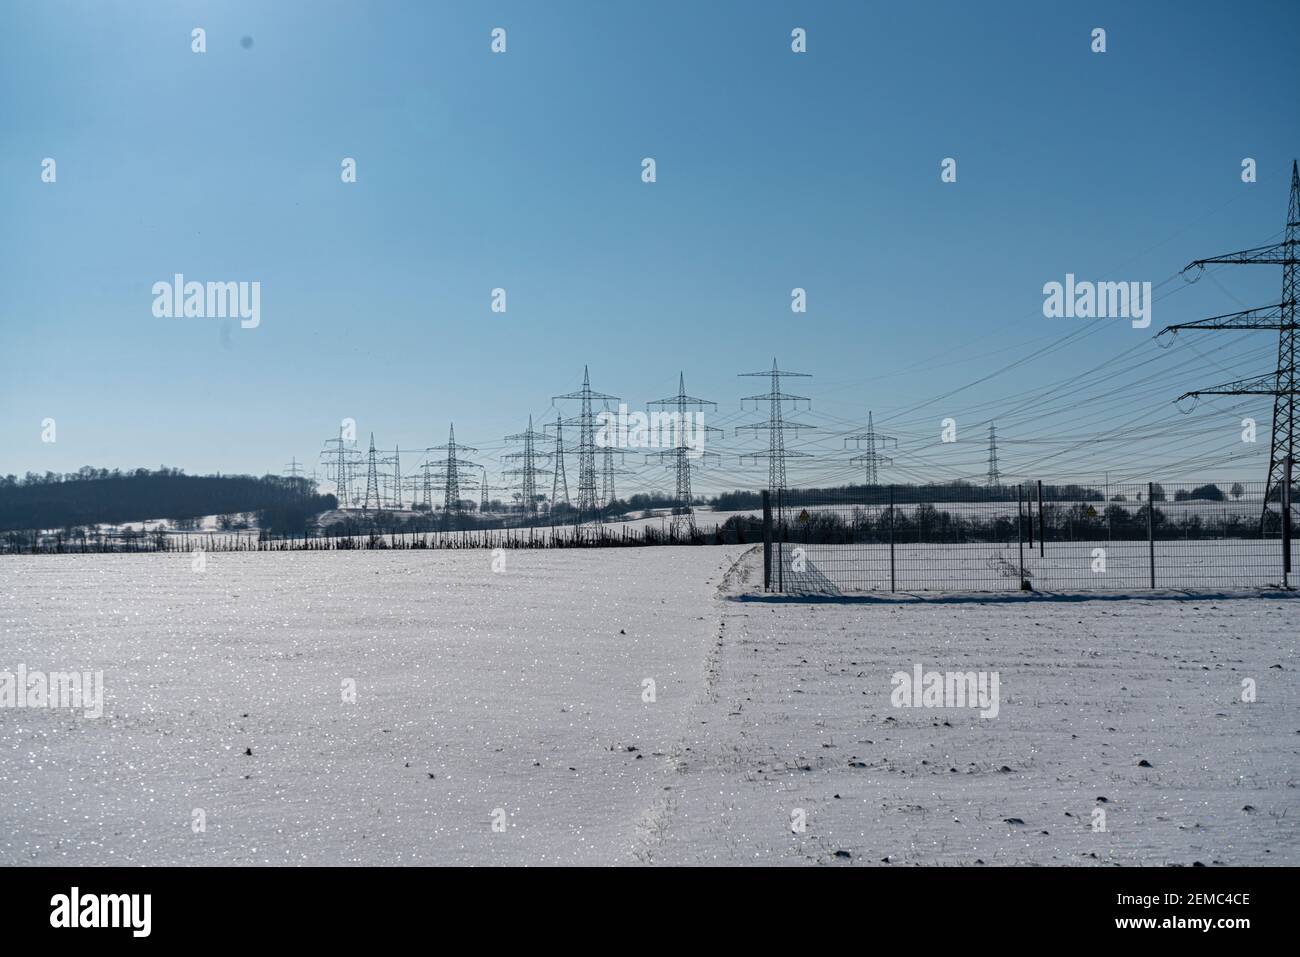 Palo elettrico realizzato in materiale naturale in un paesaggio invernale con un cielo blu chiaro Foto Stock